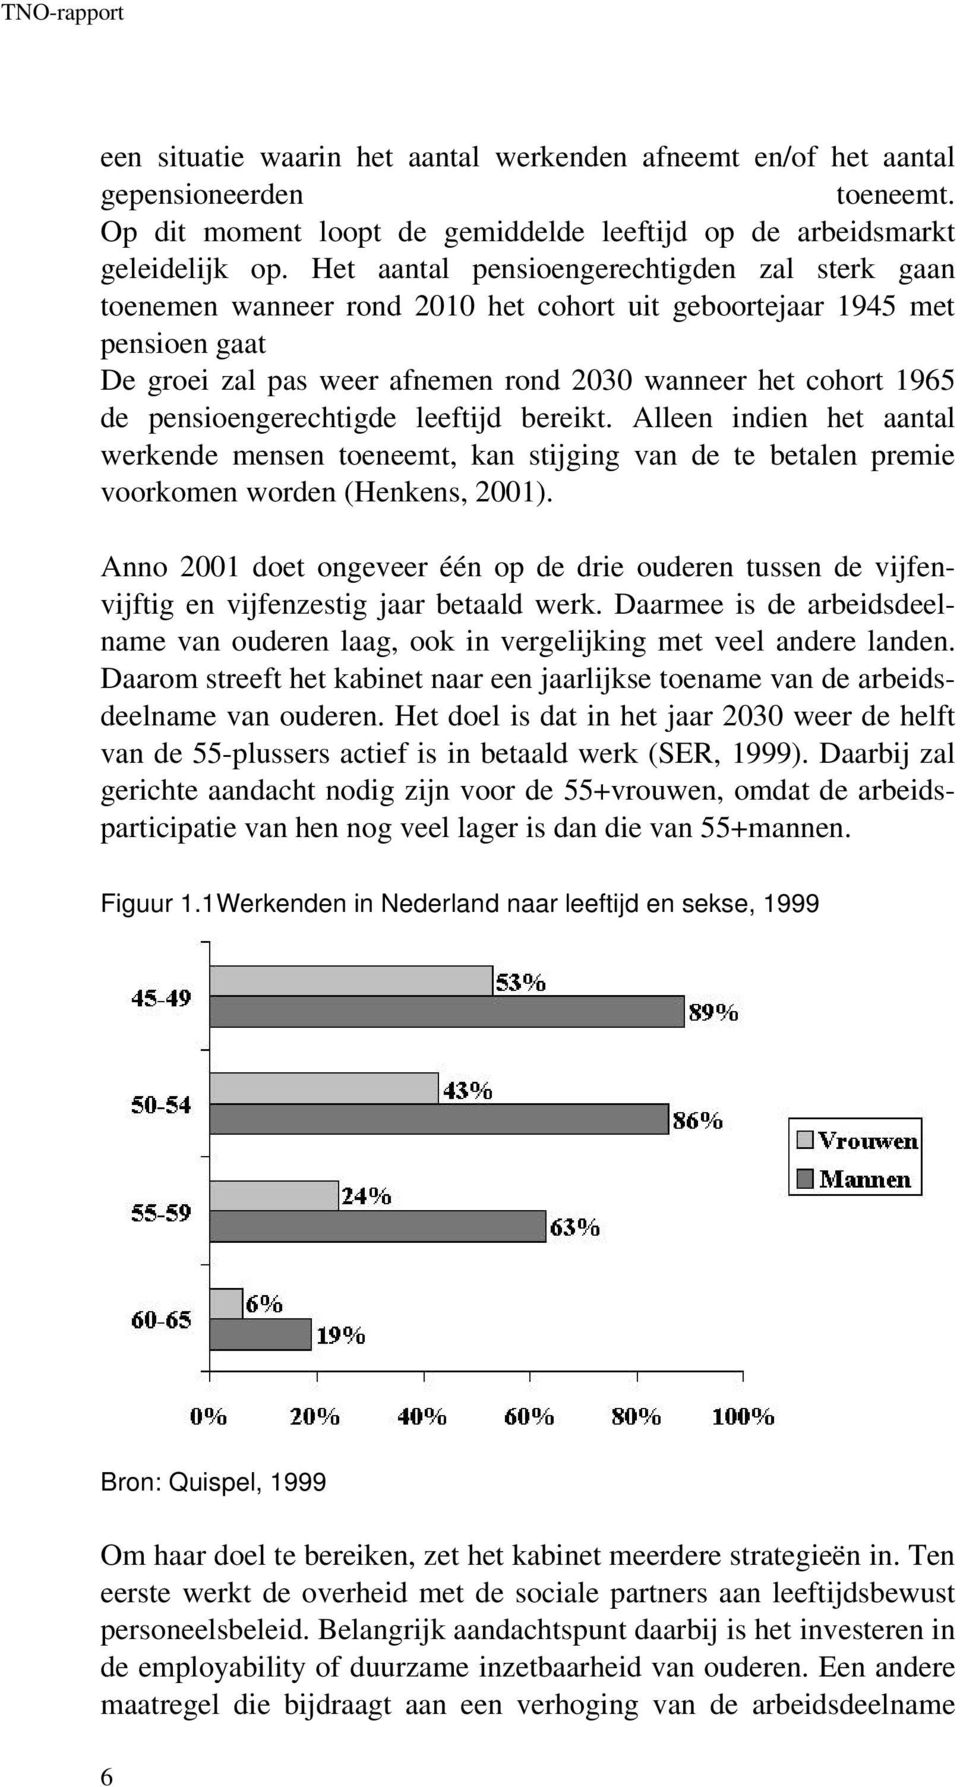 pensioengerechtigde leeftijd bereikt. Alleen indien het aantal werkende mensen toeneemt, kan stijging van de te betalen premie voorkomen worden (Henkens, 2001).